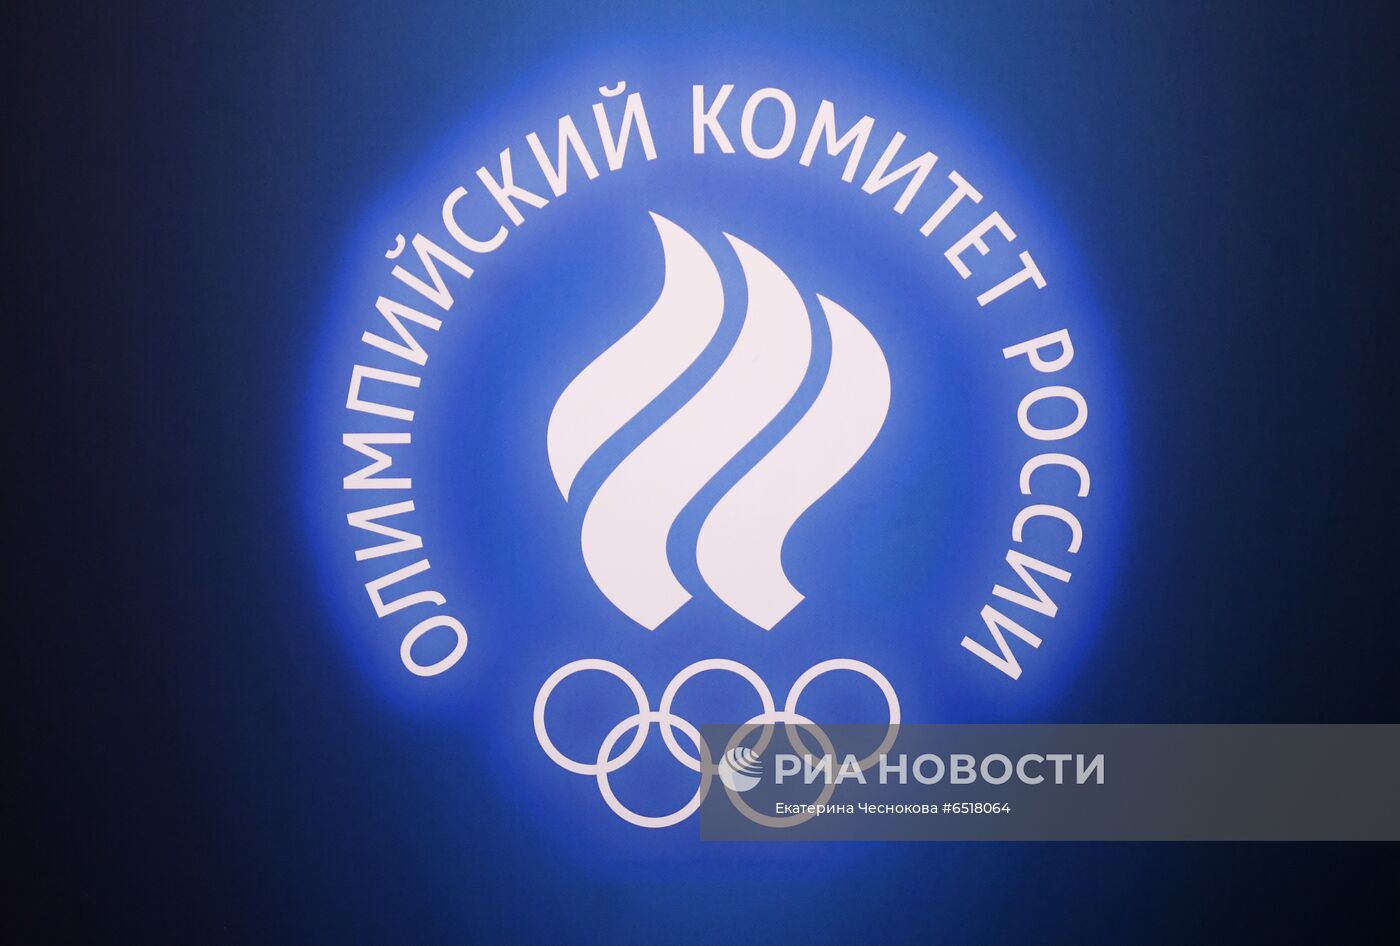 Презентация официальной формы Олимпийской команды России на ОИ-2020 